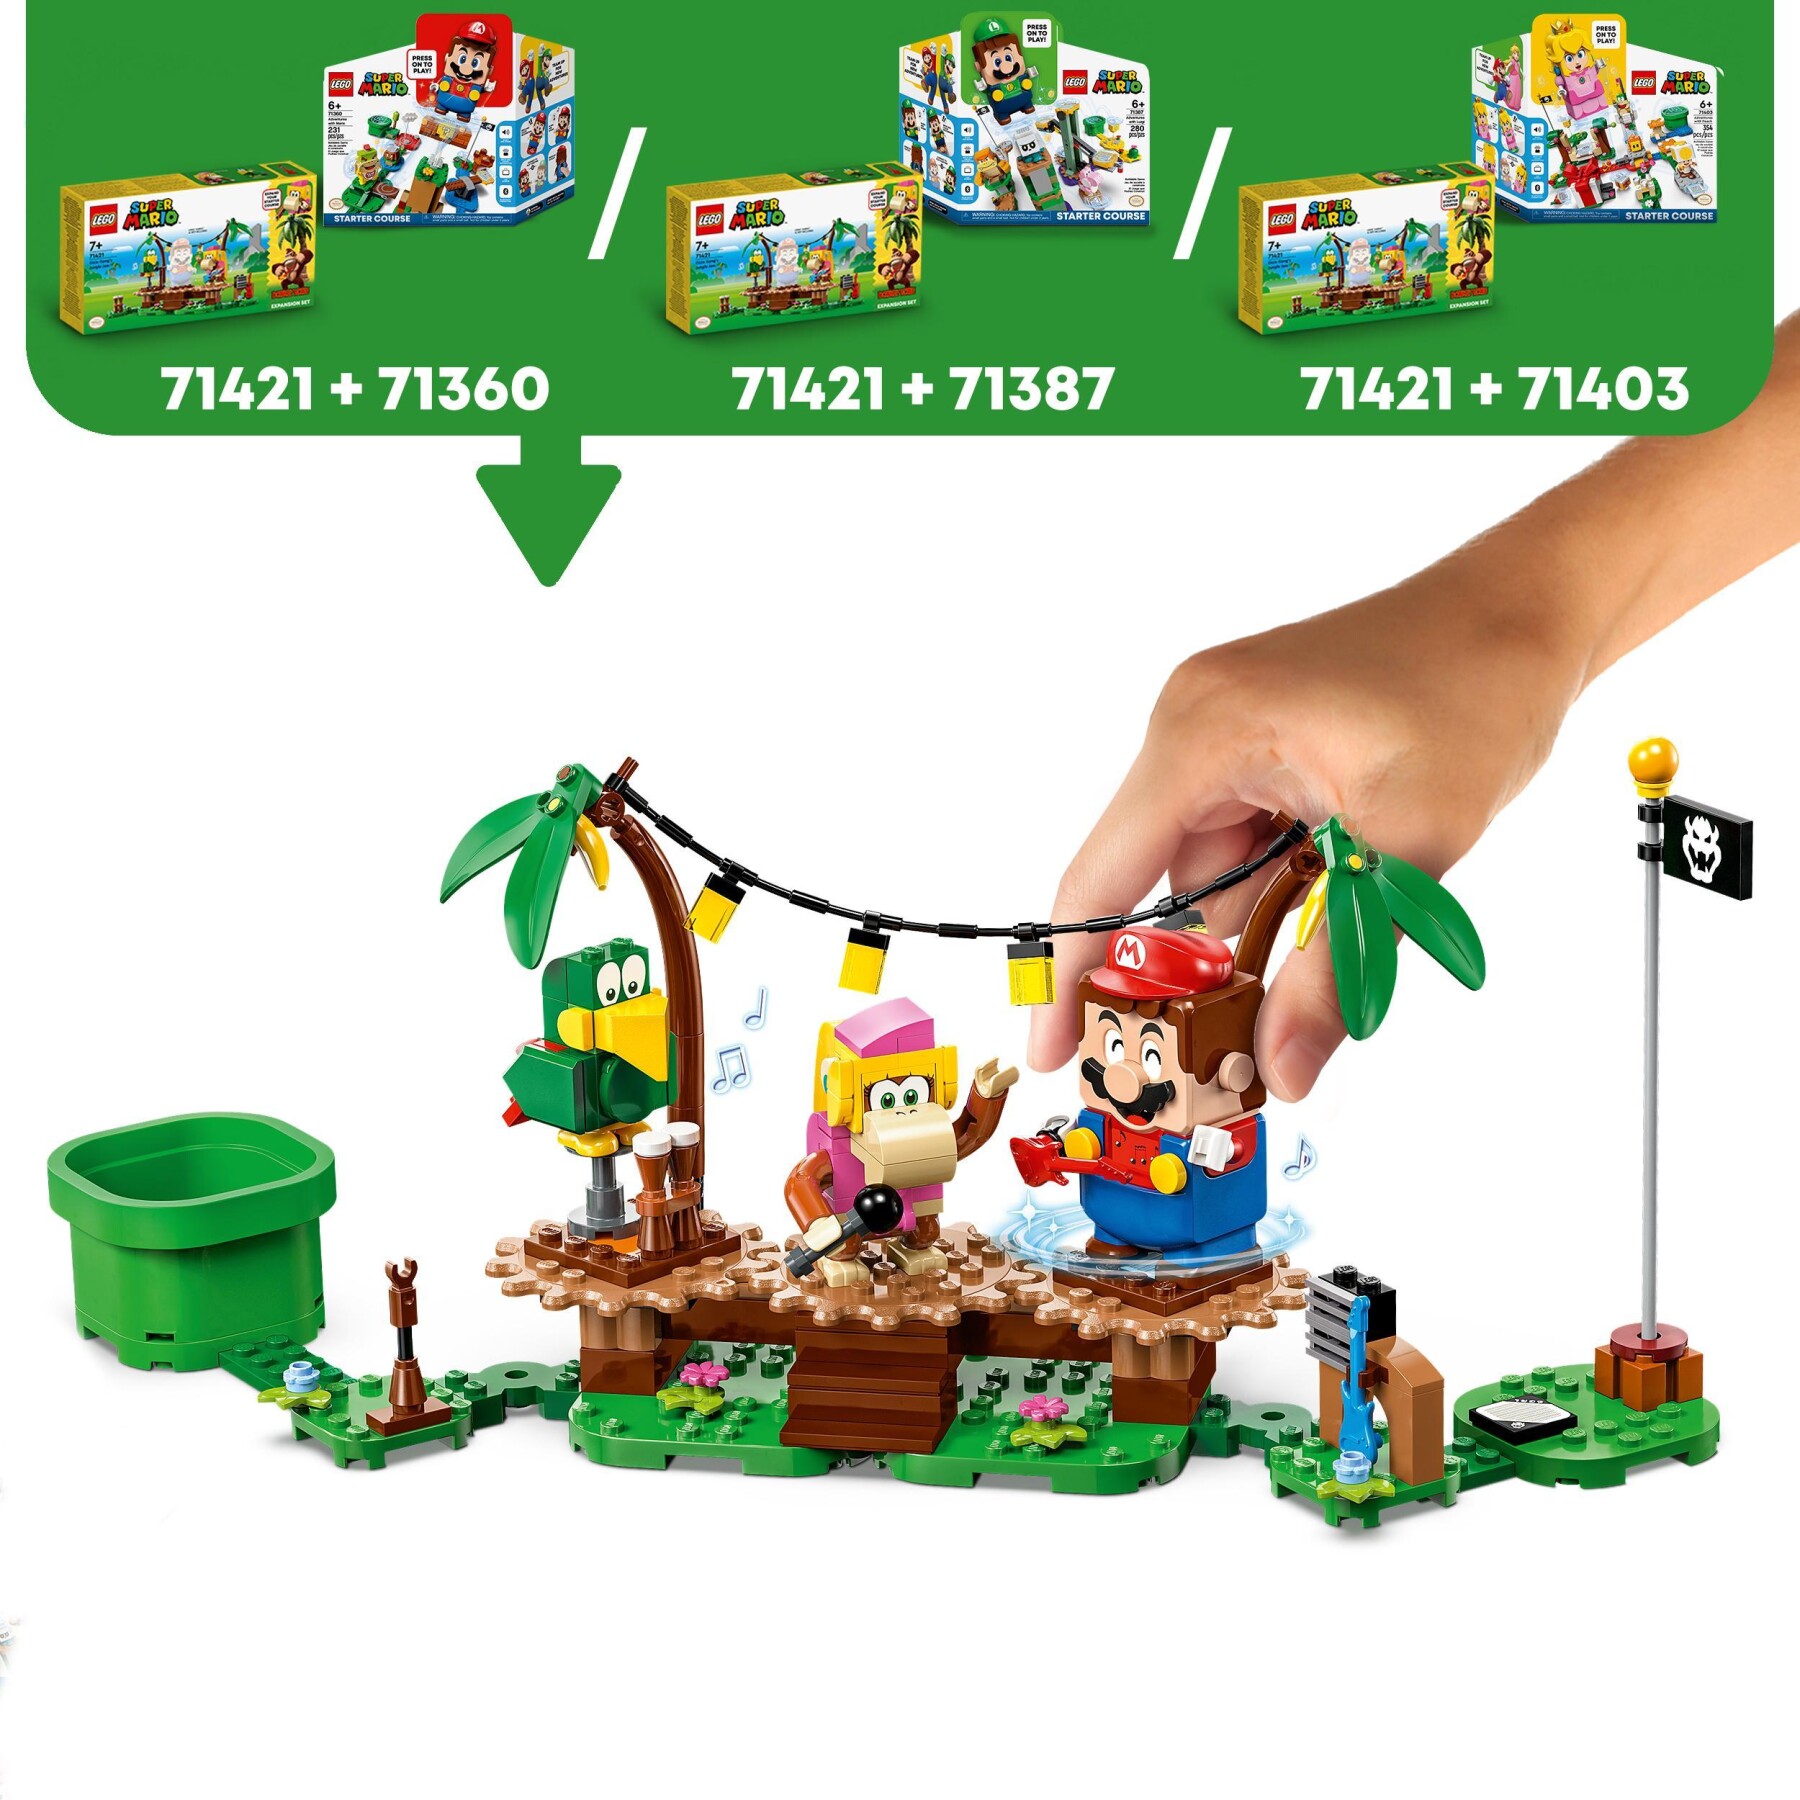 Lego super mario 71421 pack di espansione concerto nella giungla di dixie kong con figure di dixie kong e pagal il pappagallo - LEGO® Super Mario™, Super Mario